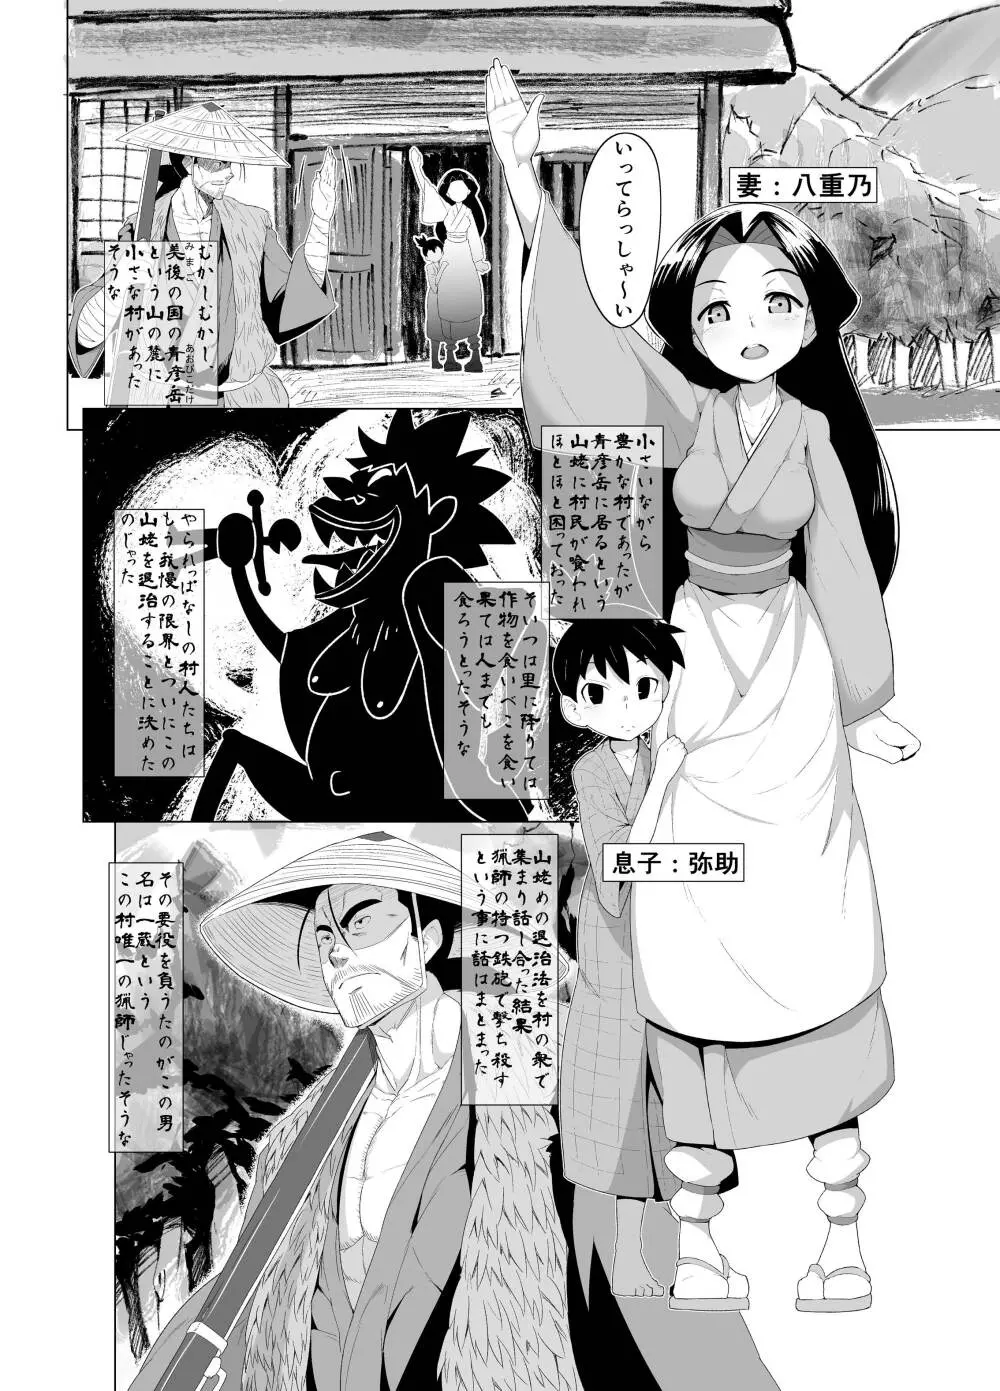 えろまんが日本昔話 - 同人誌 - エロ漫画 - NyaHentai